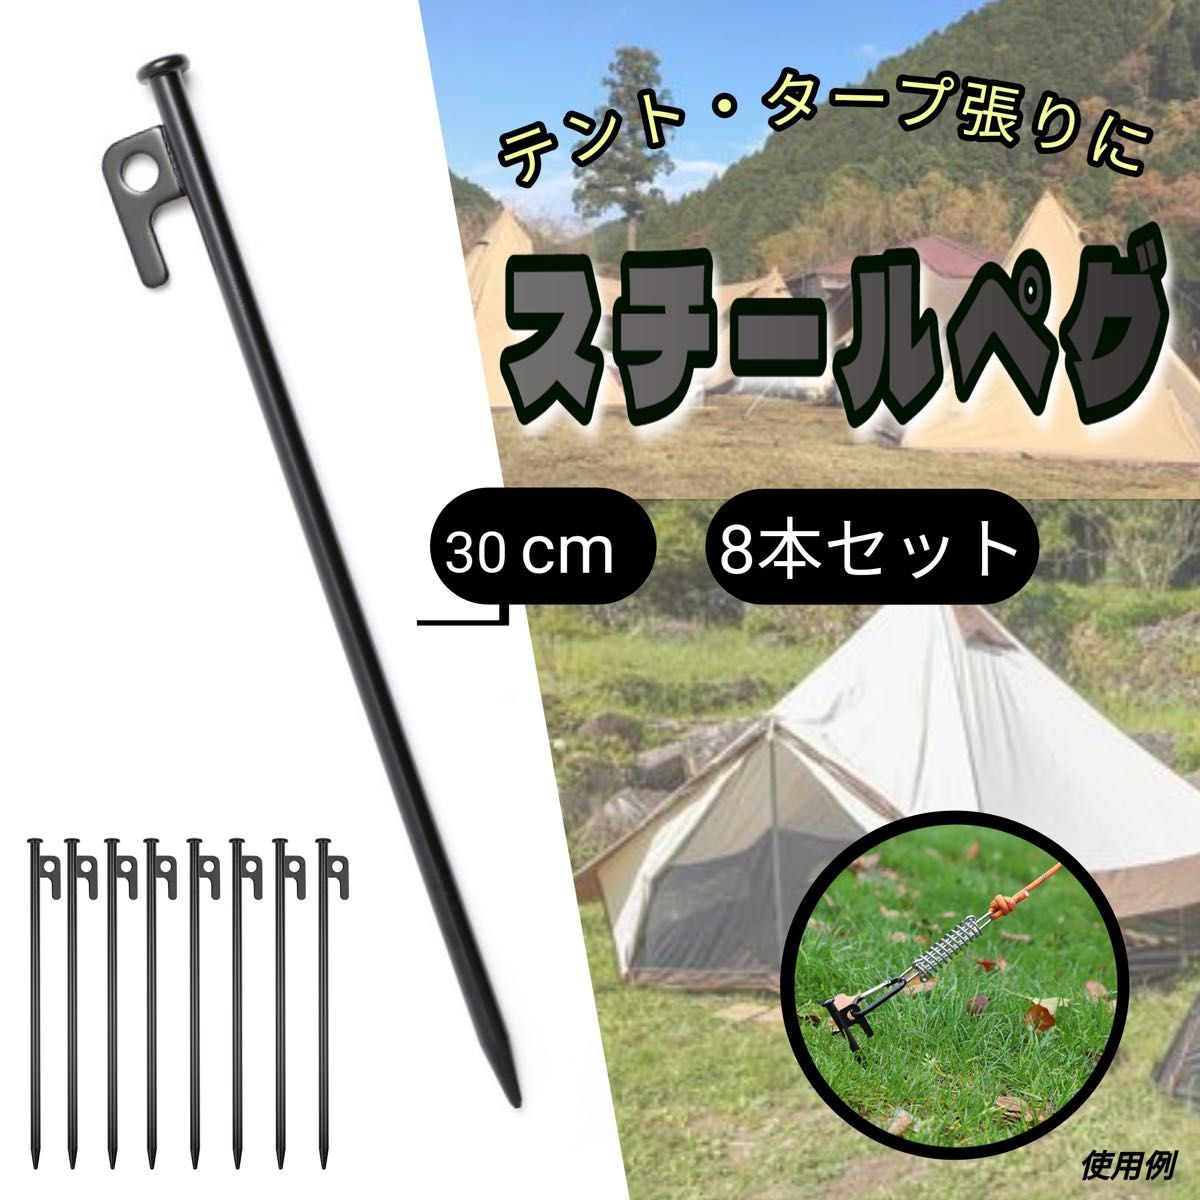 ☆スチールペグ☆タープ キャンプ アウトドア テント用品 通販